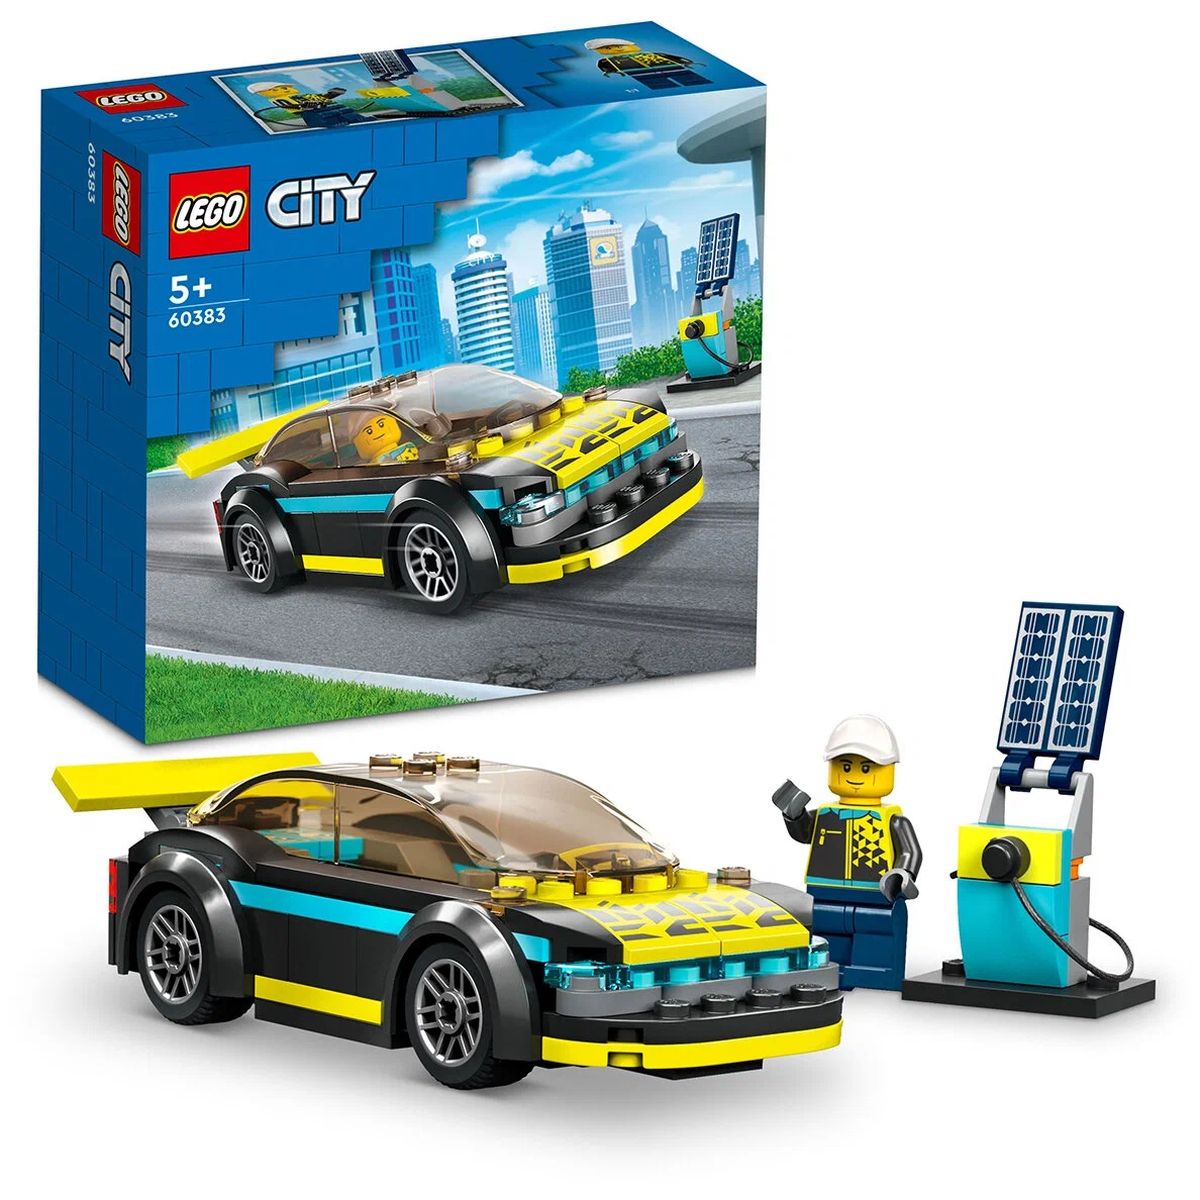 Конструктор LEGO City Электрический спорткар, 95 деталей, 60383 конструктор lego city 60216 центральная пожарная станция